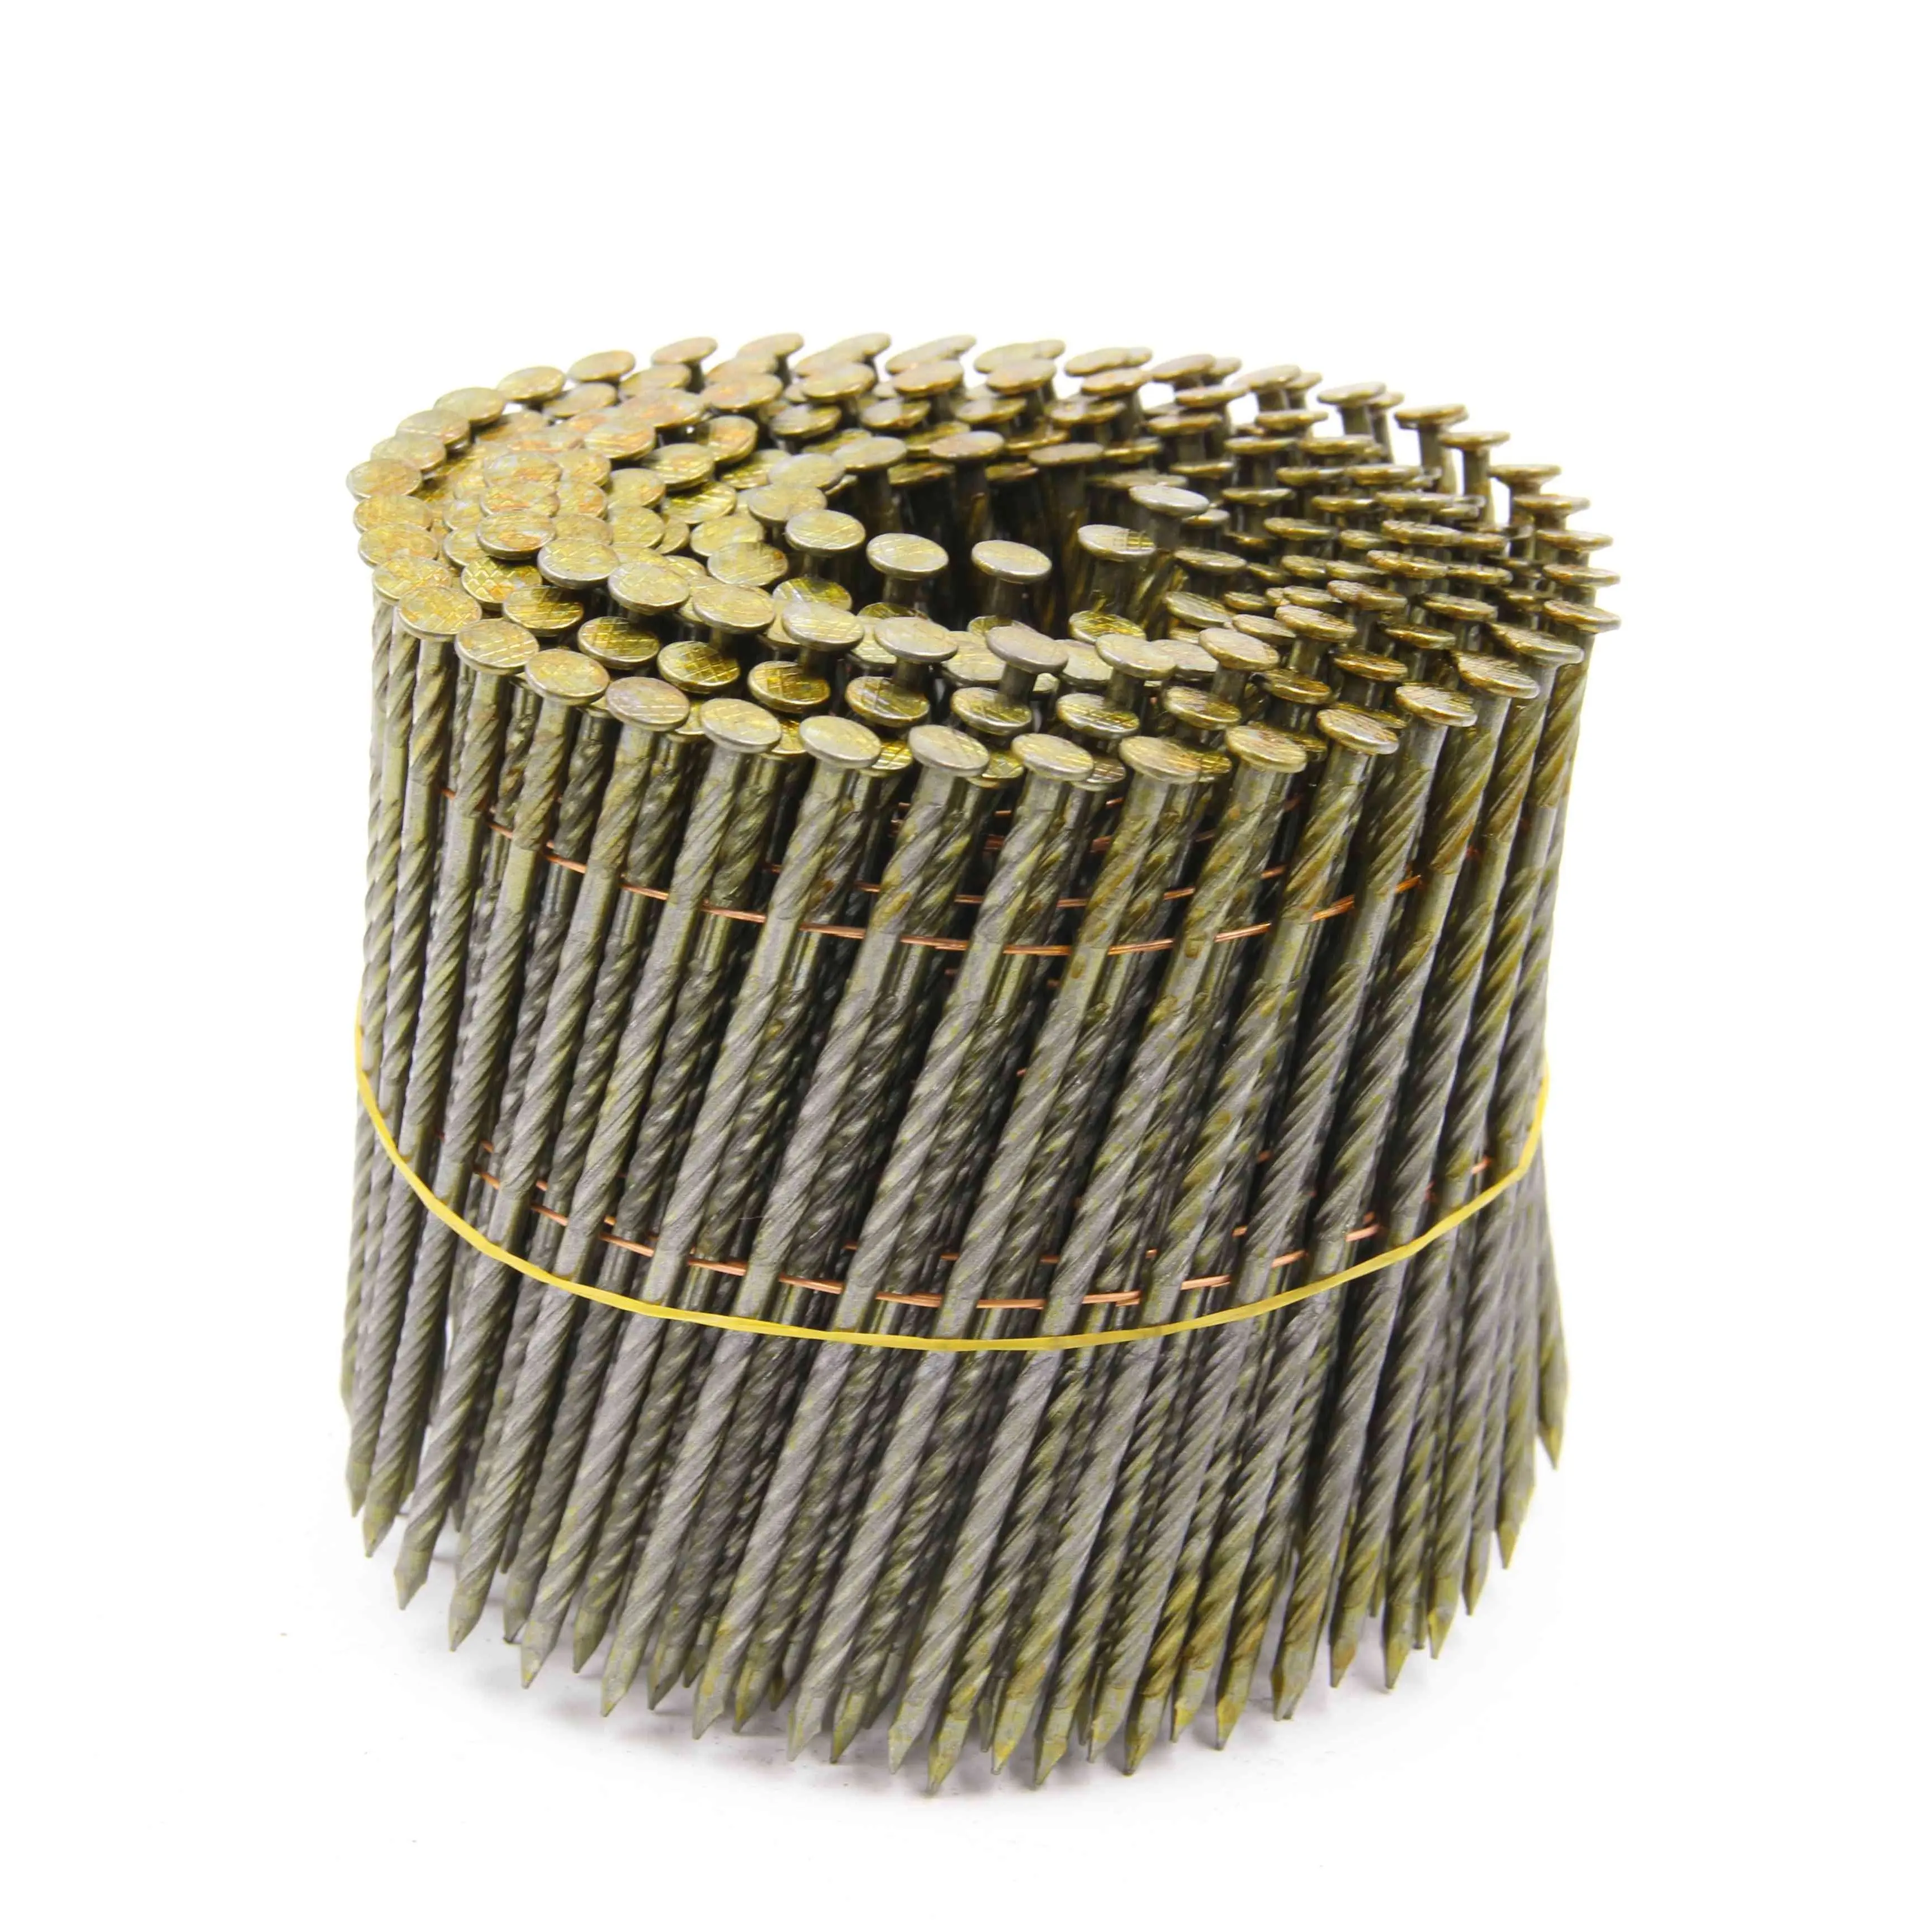 Fabricant de CLAVOS HELICOIDALES 2 clous de bobine de palette de fil de 1/4 pouces x.099 pouces